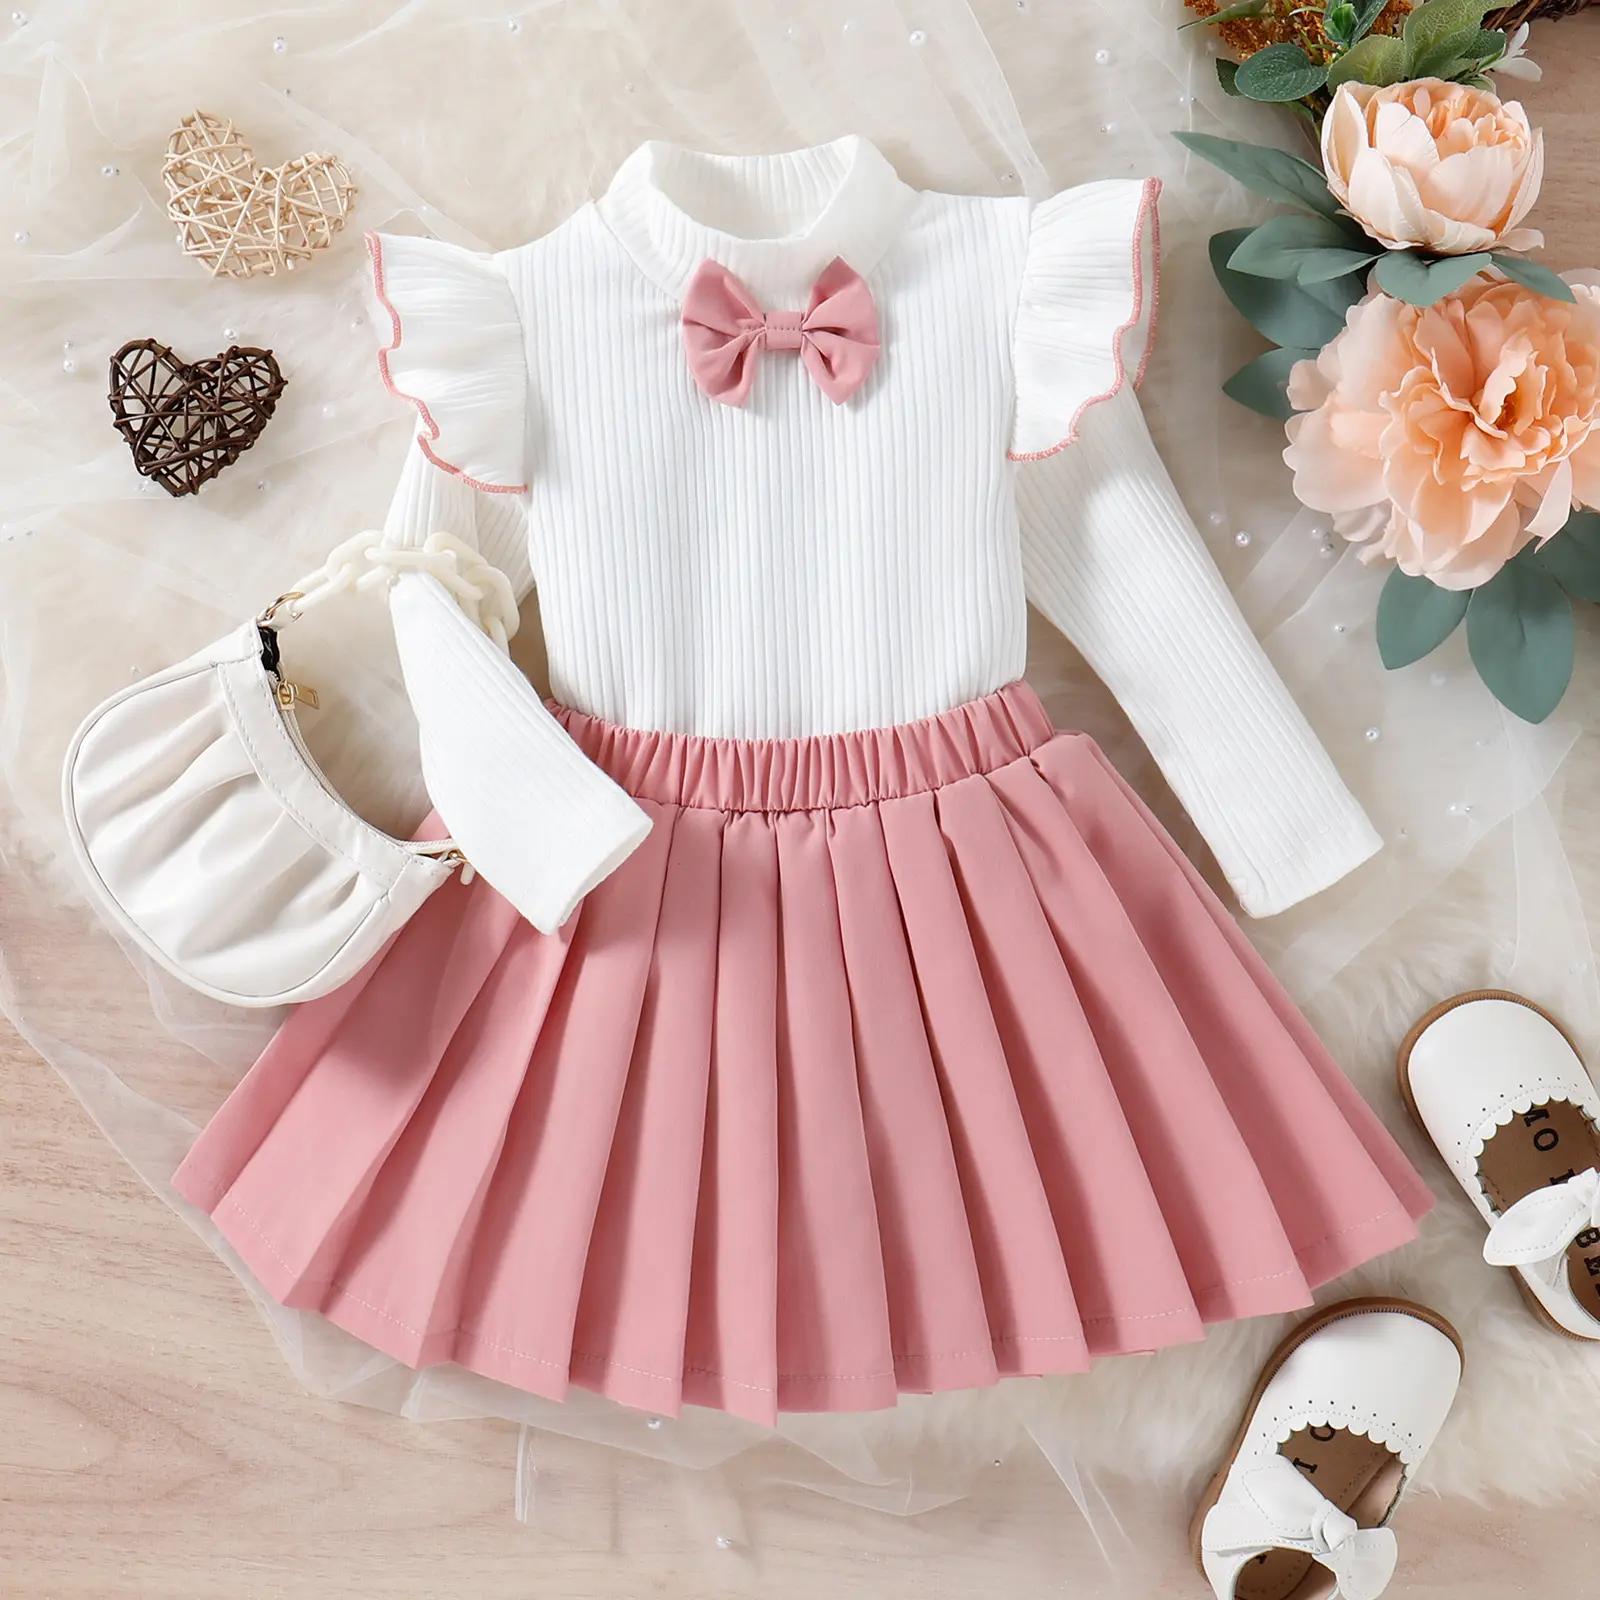 Nova moda criança meninas roupas pit stripe voar manga tops + rosa saia plissada boutique duas peças crianças meninas roupas